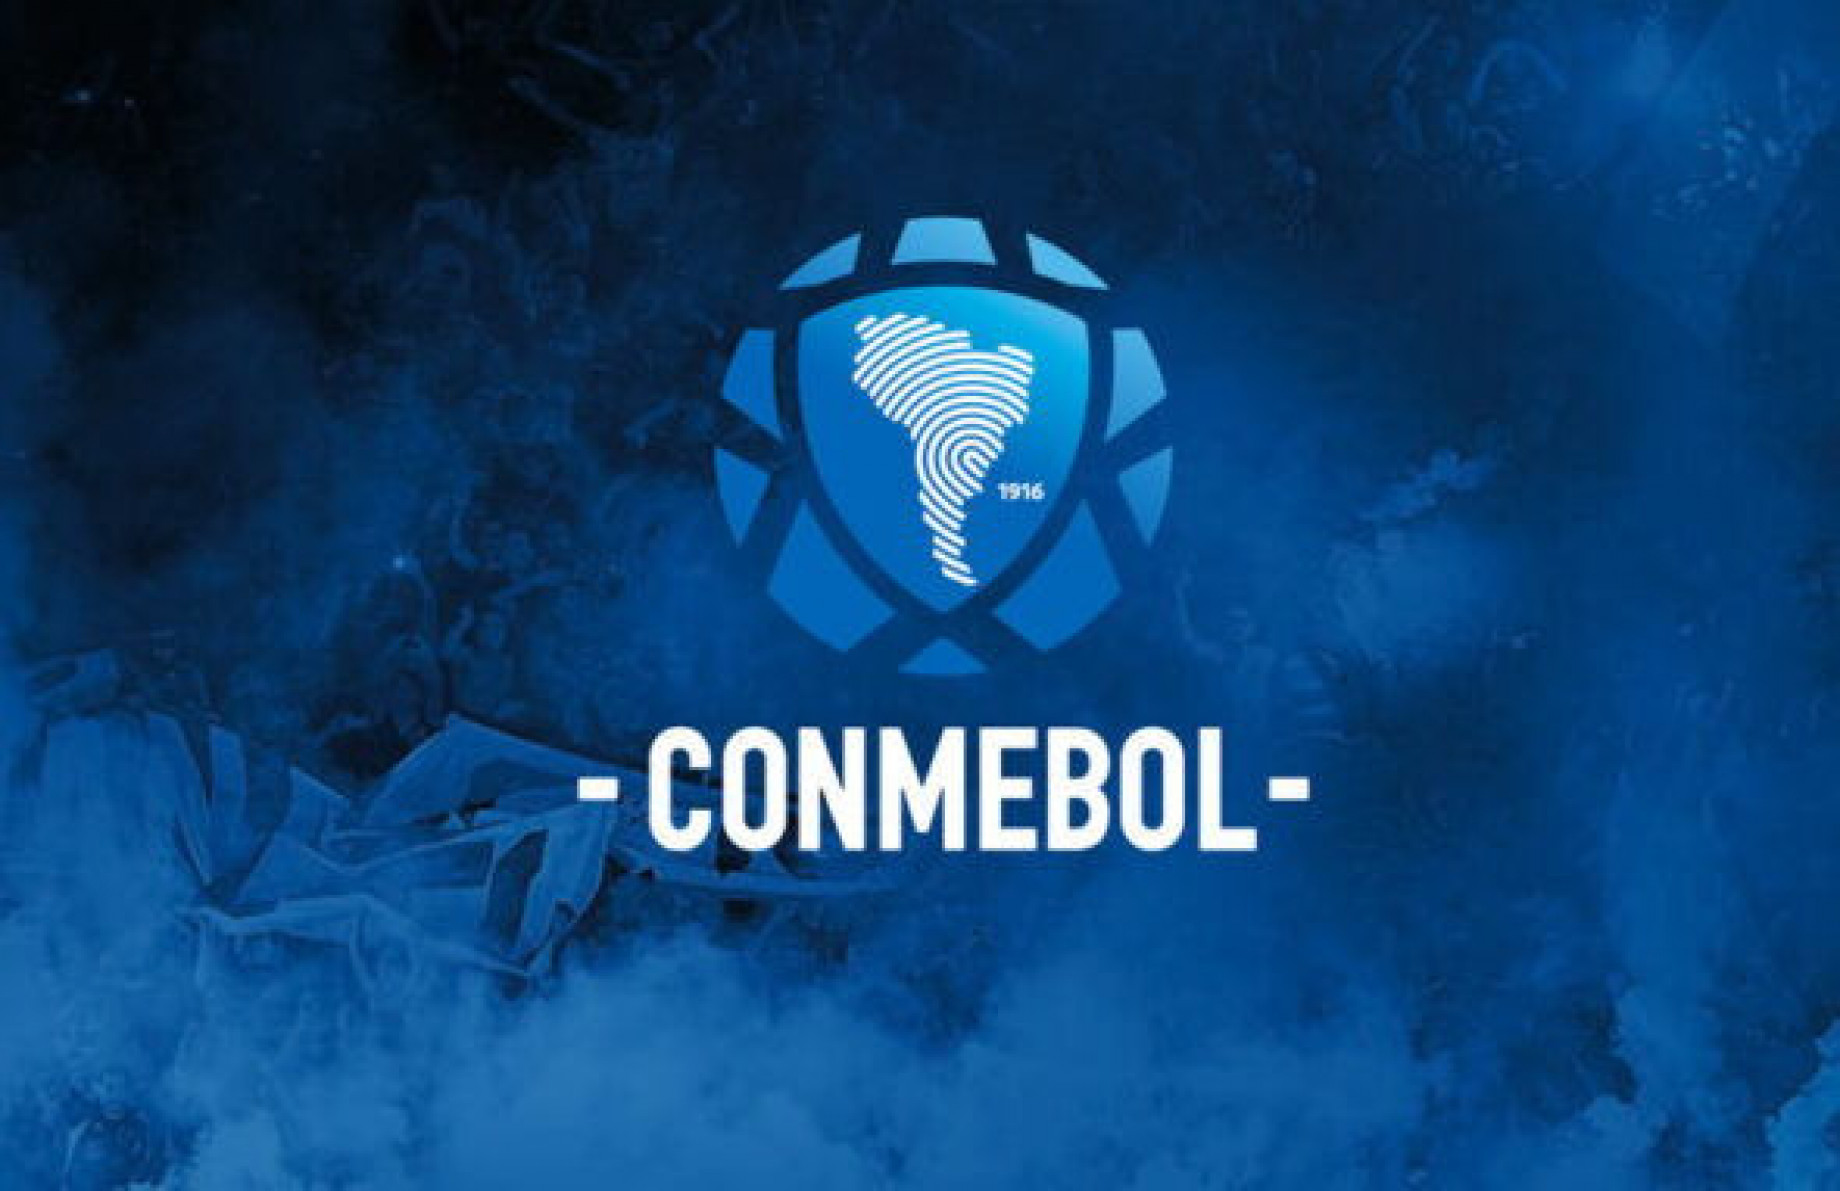 conmebol_logo.jpg